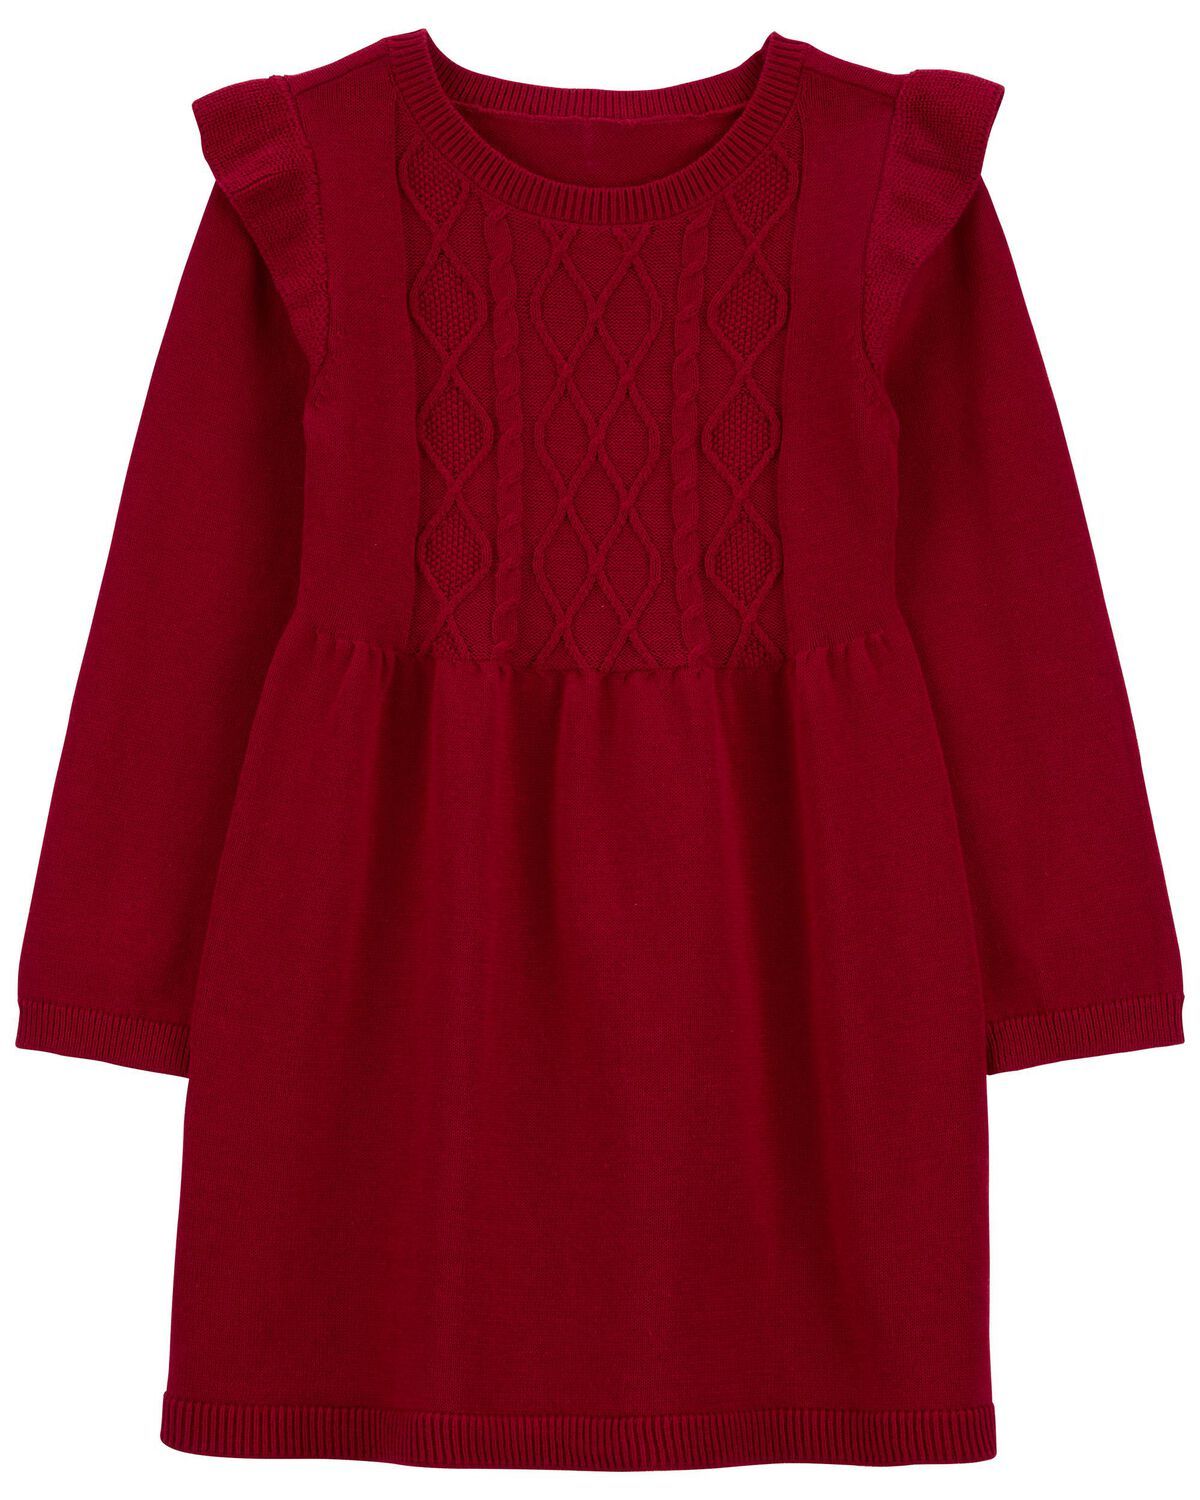 Red Toddler Sweater Dress | carters.com | Carter's